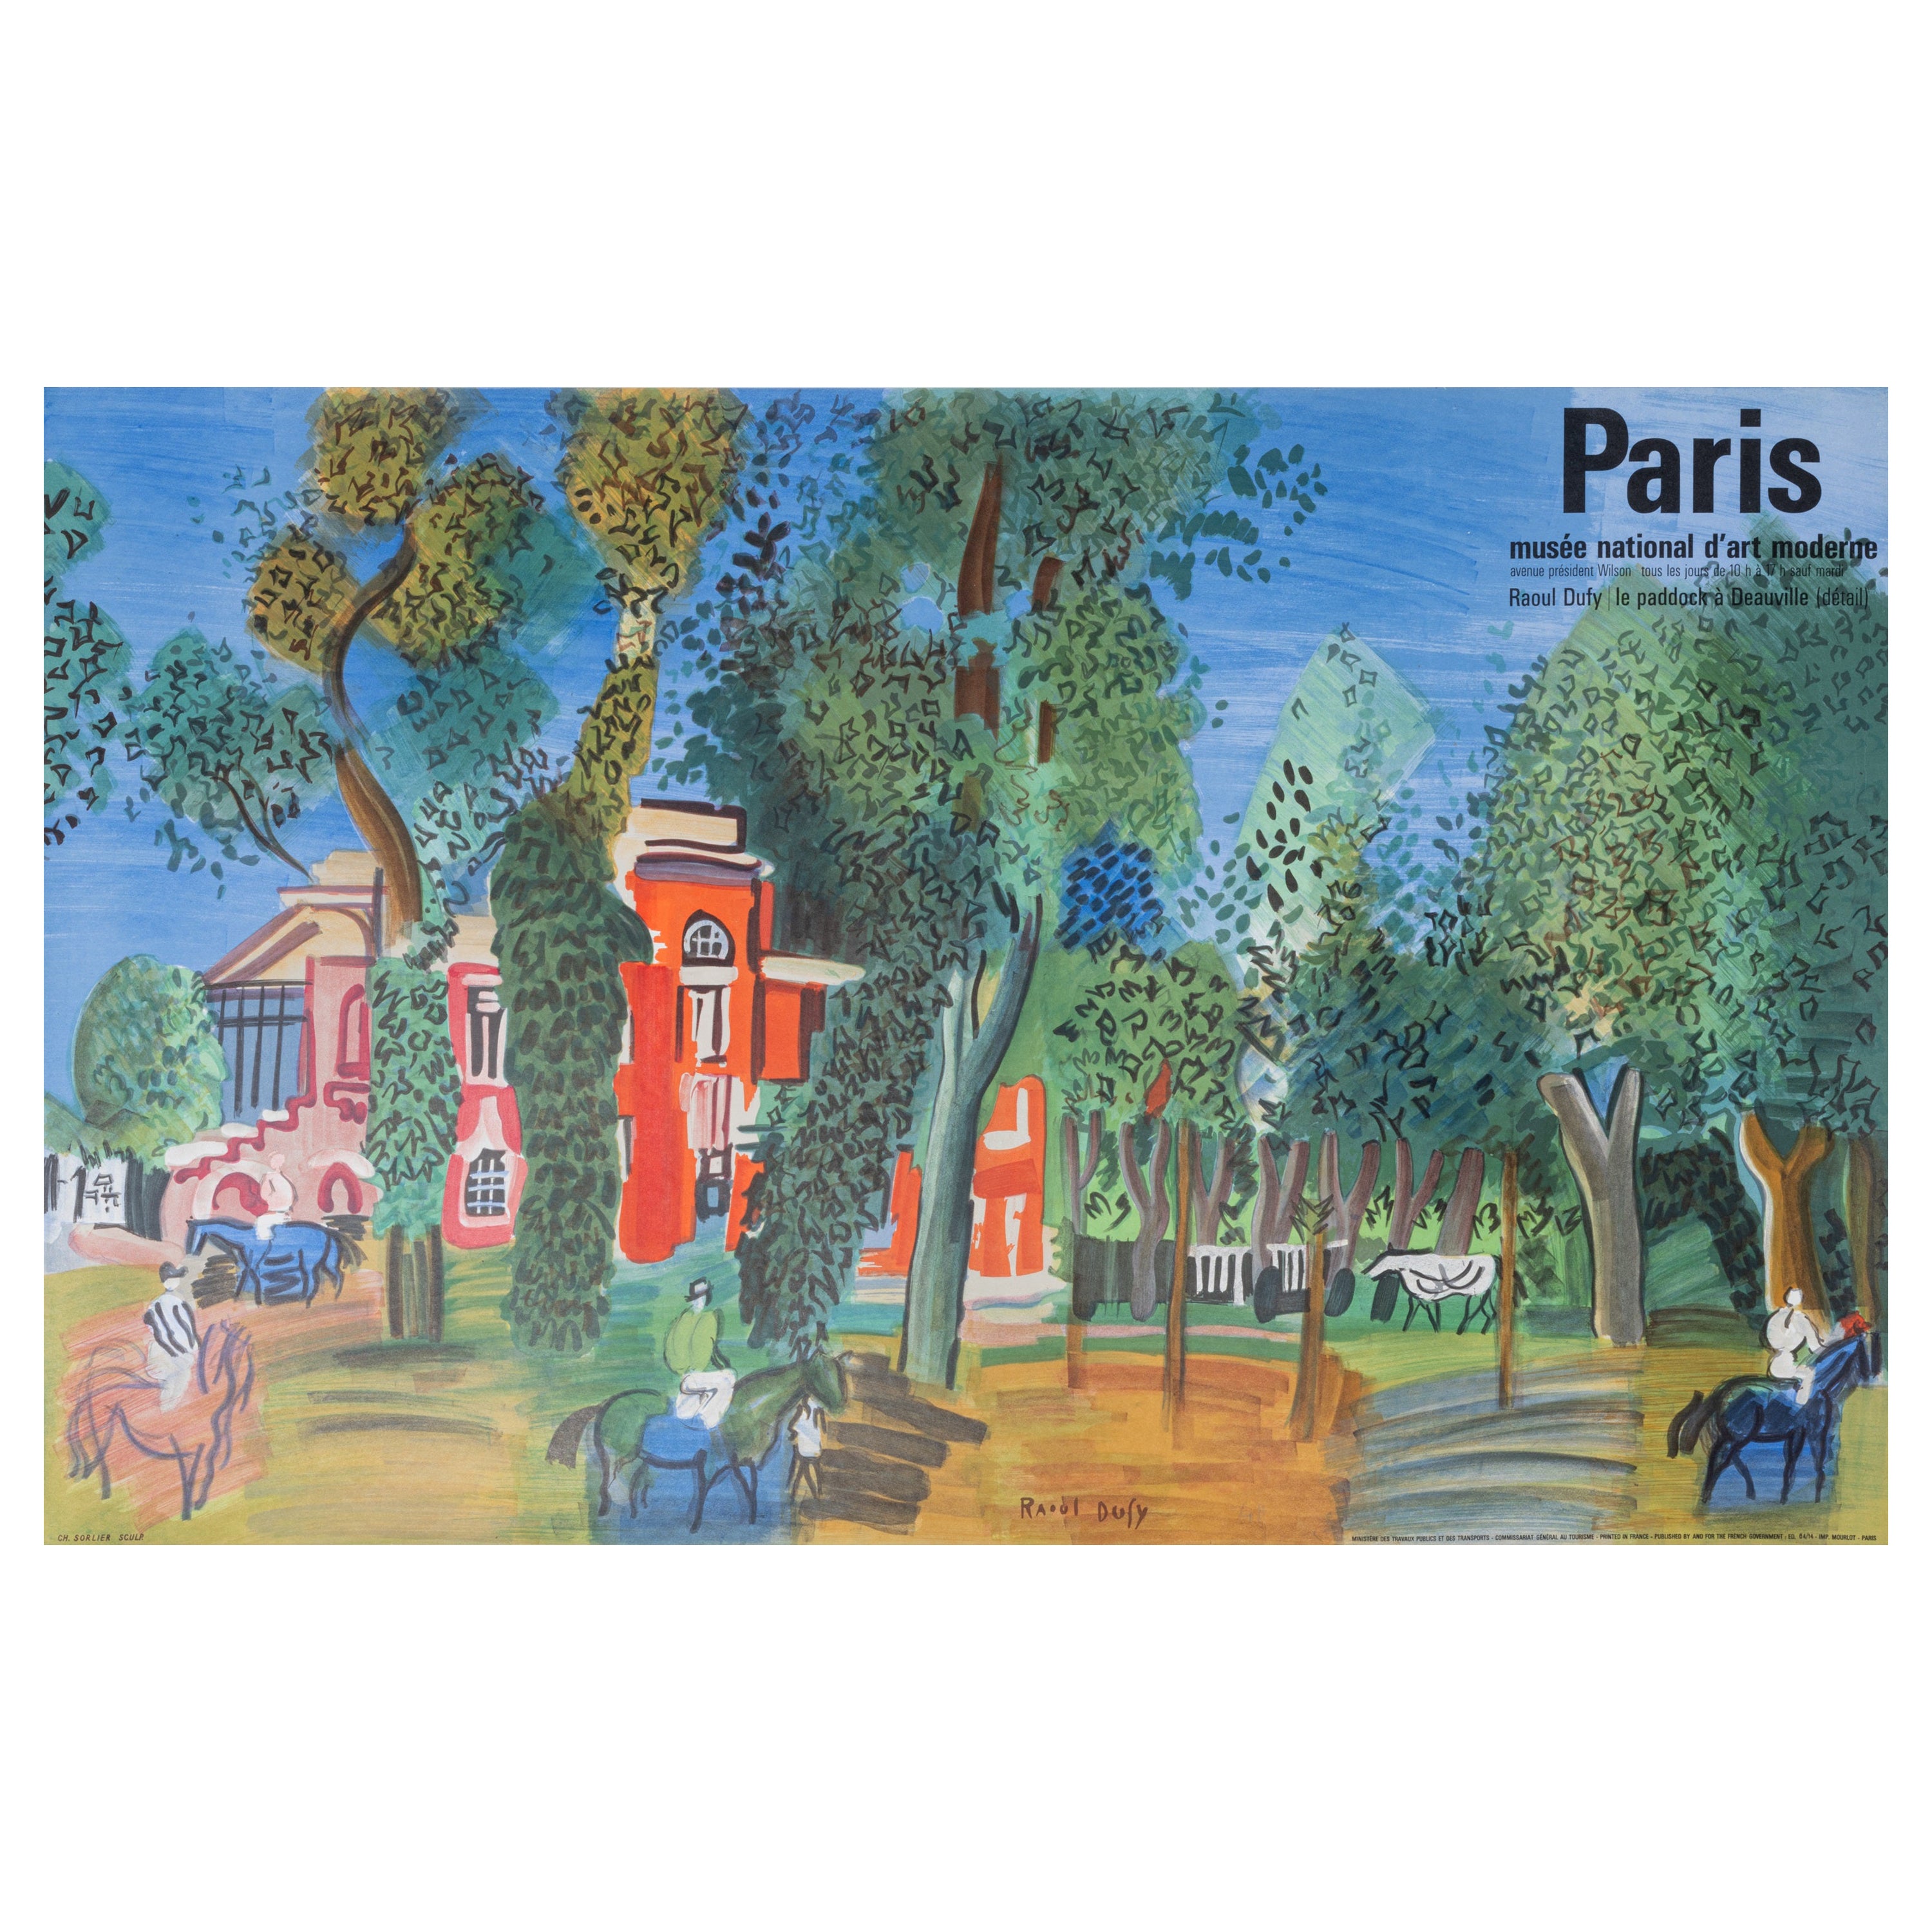 Dufy, Original Vintage Poster, Paris, MAD, Fauvism Cubism, Deauville Horses 1964 For Sale